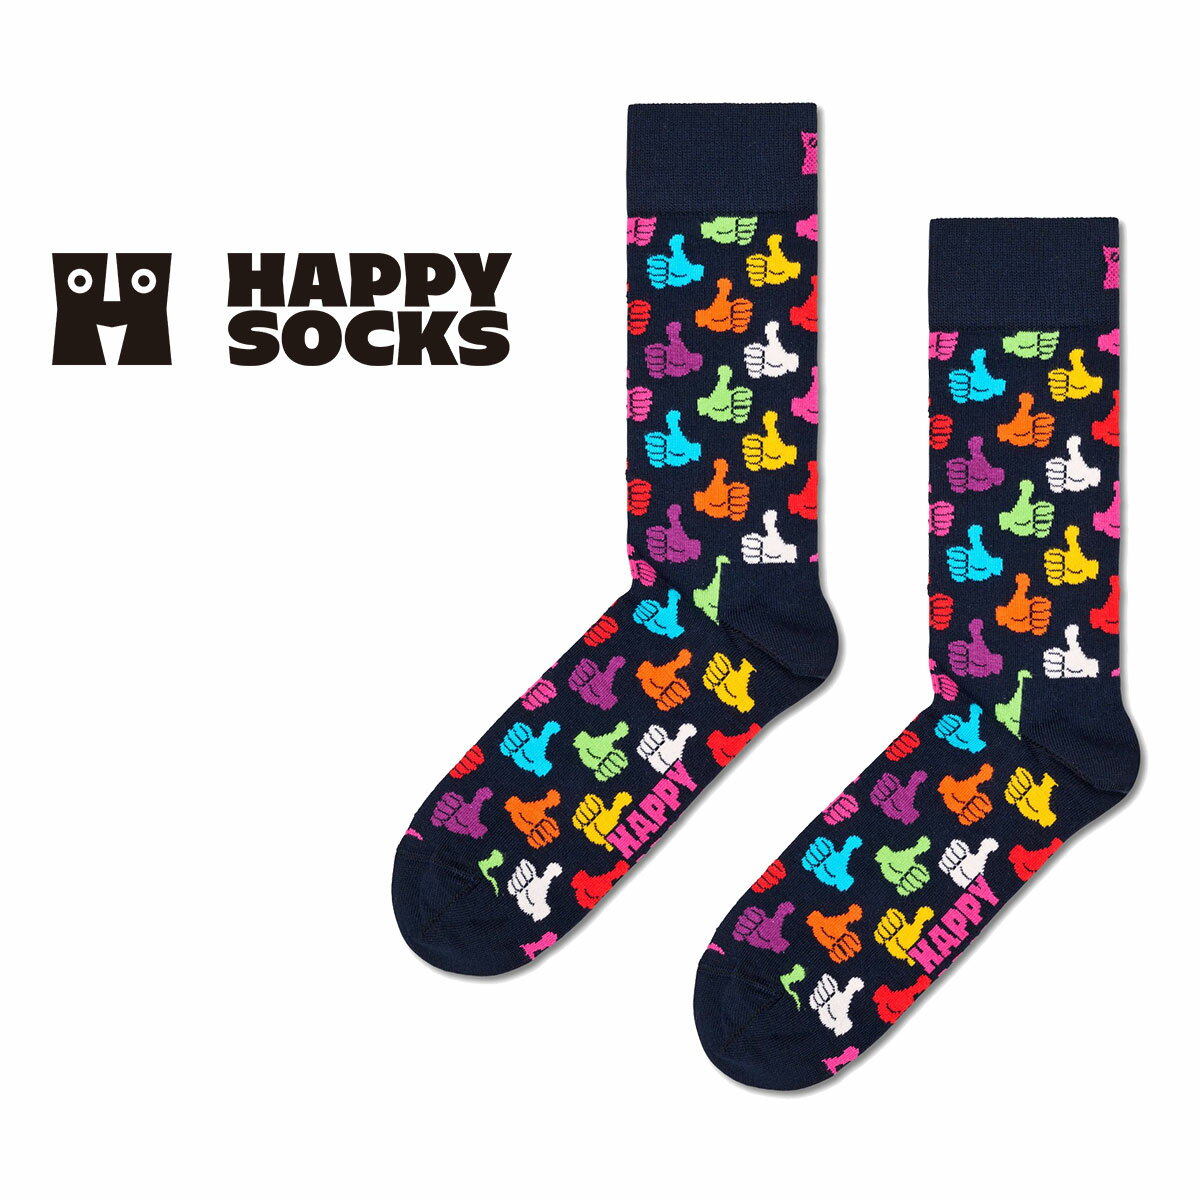 Happy Socks nbs[\bNX Thumbs Up   TY Abv  N[ \bNX C jZbNX Y  fB[X v[g bsO Mtg 10201112